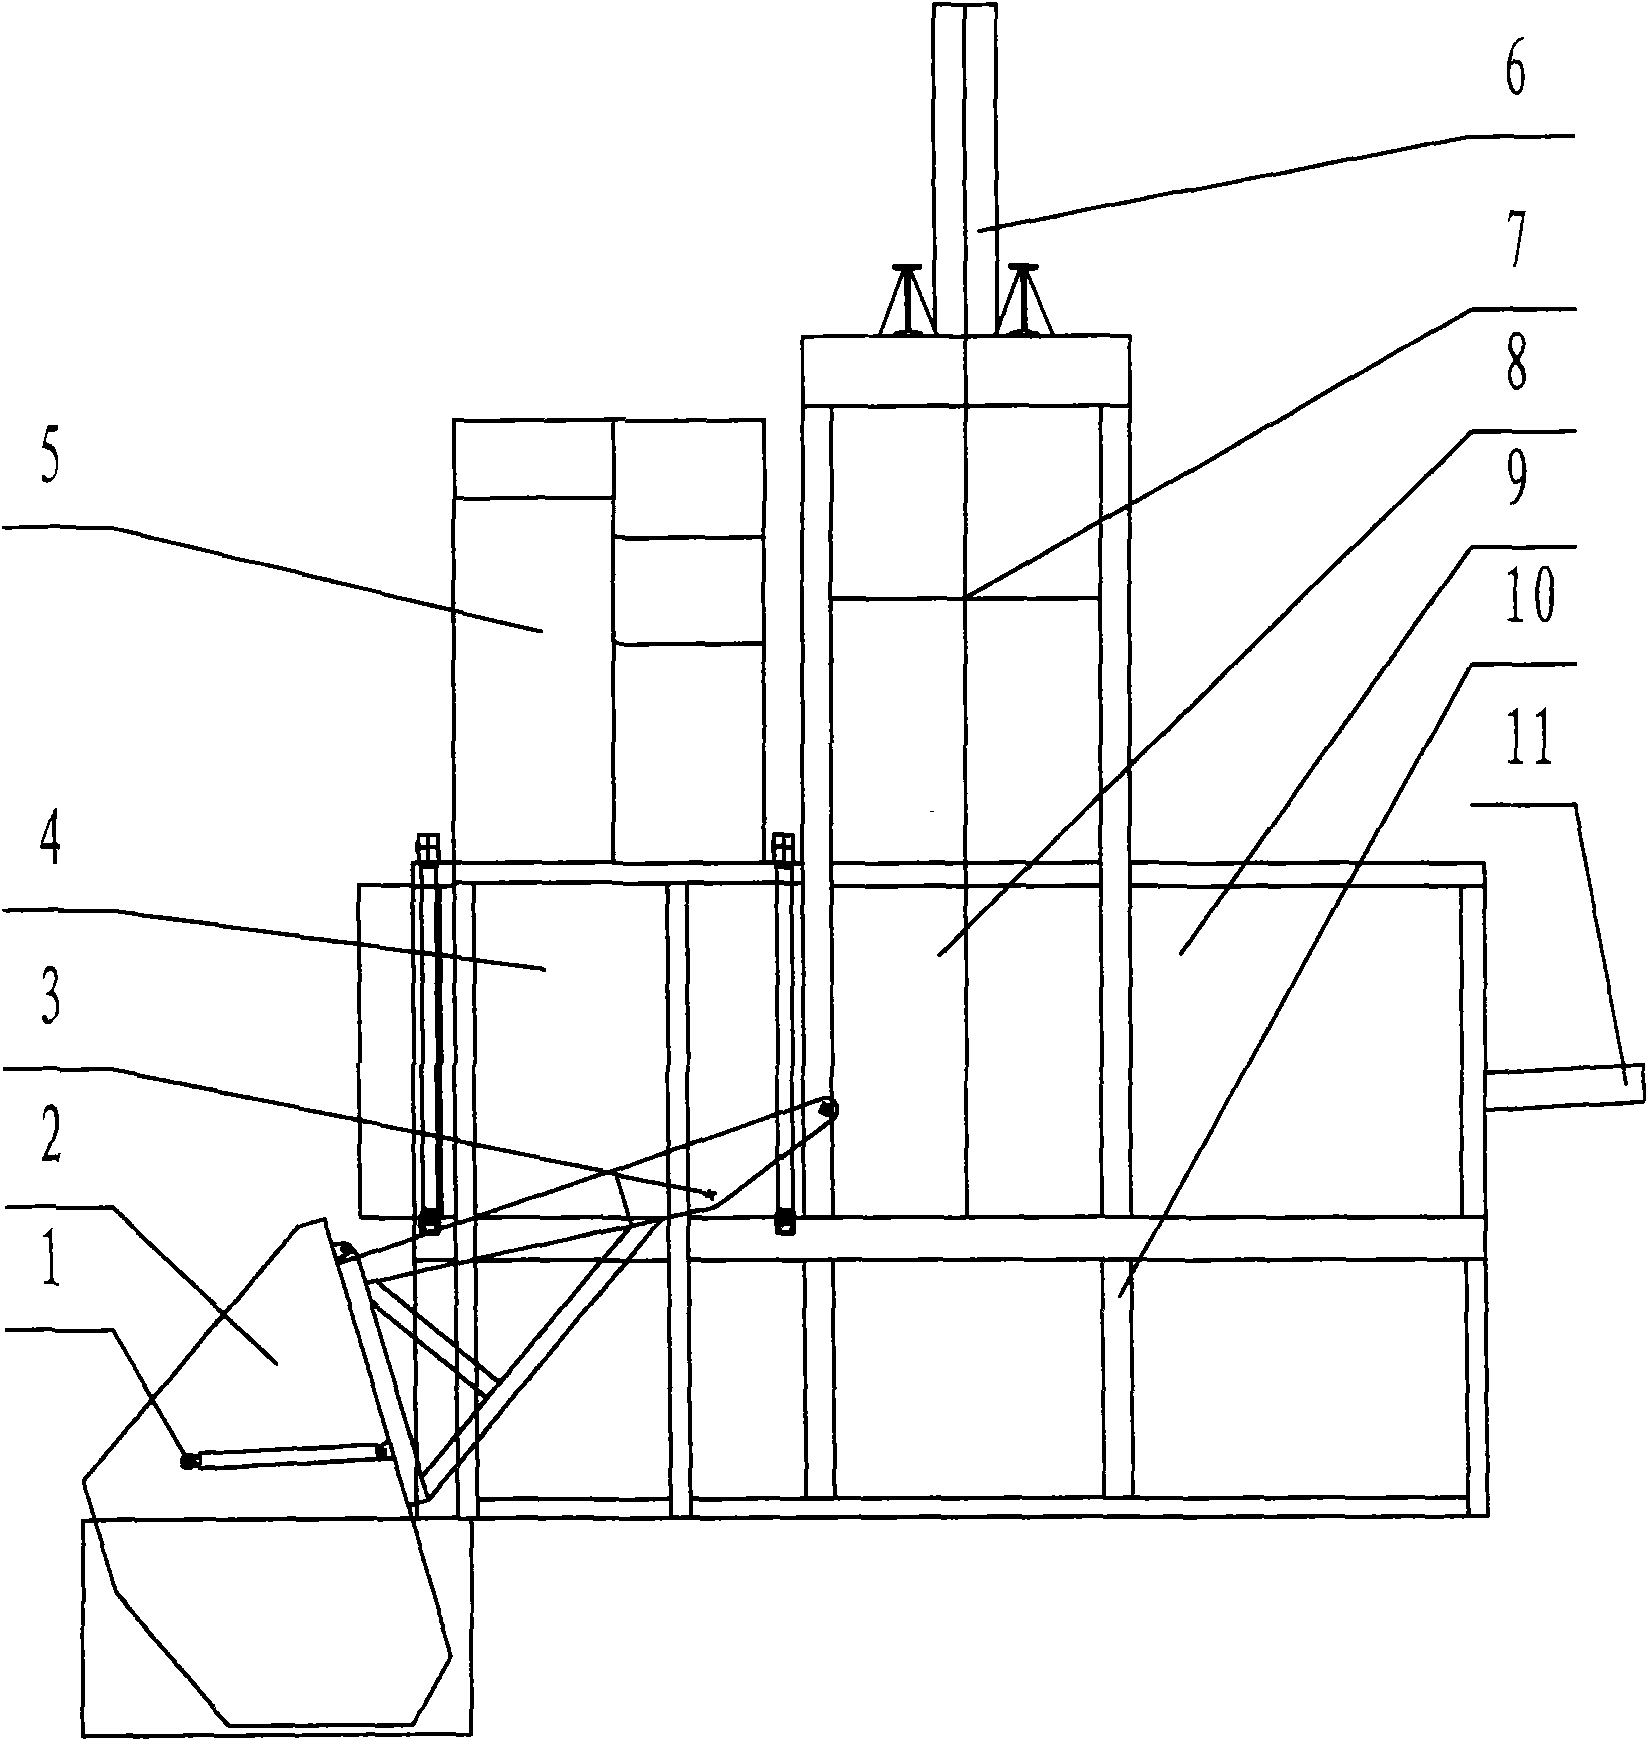 Integrated vertical garbage compressor